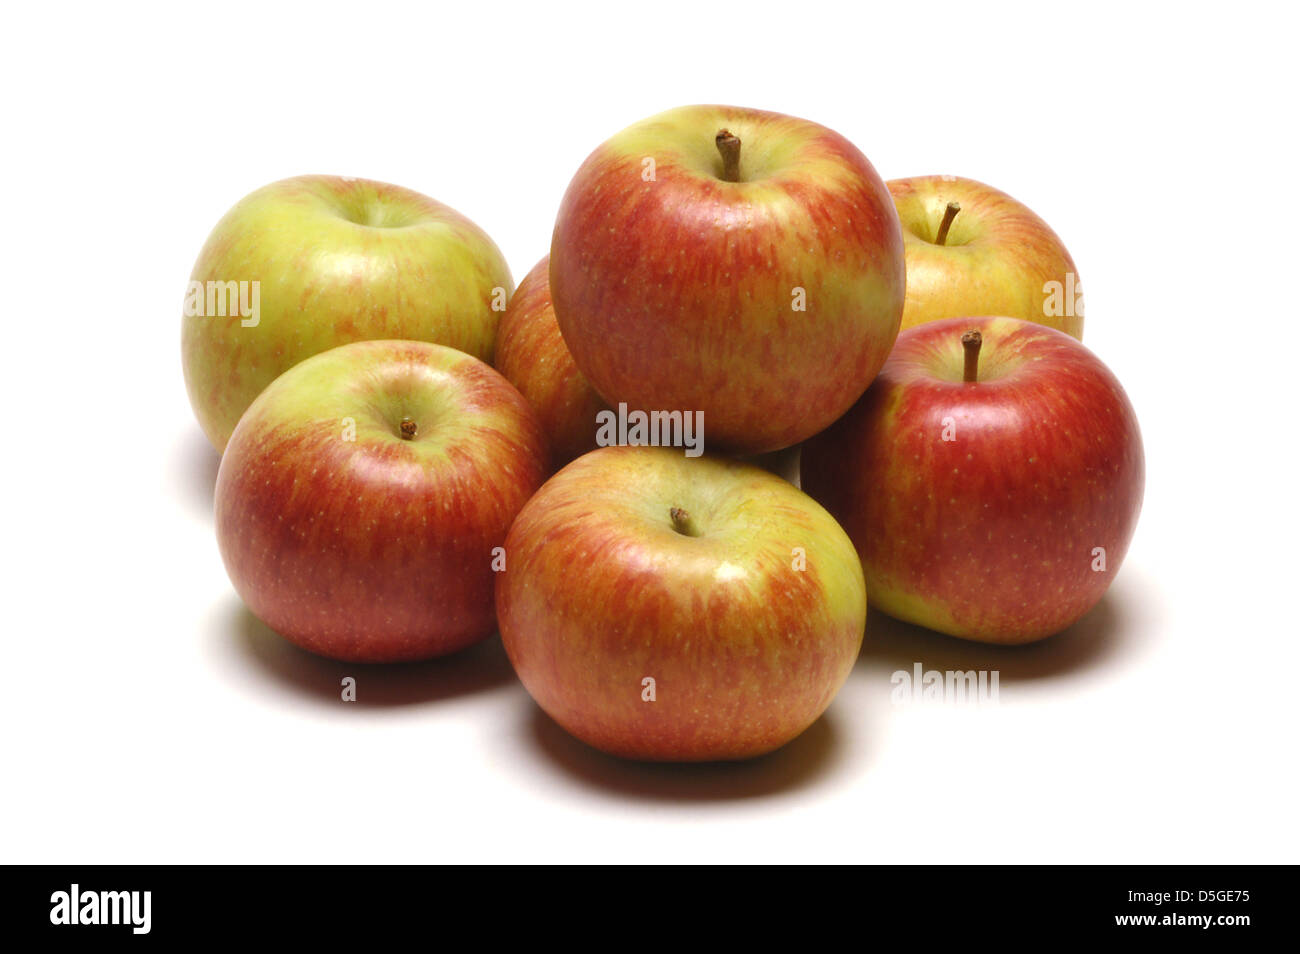 Seven ripe Cox's apples Stock Photo